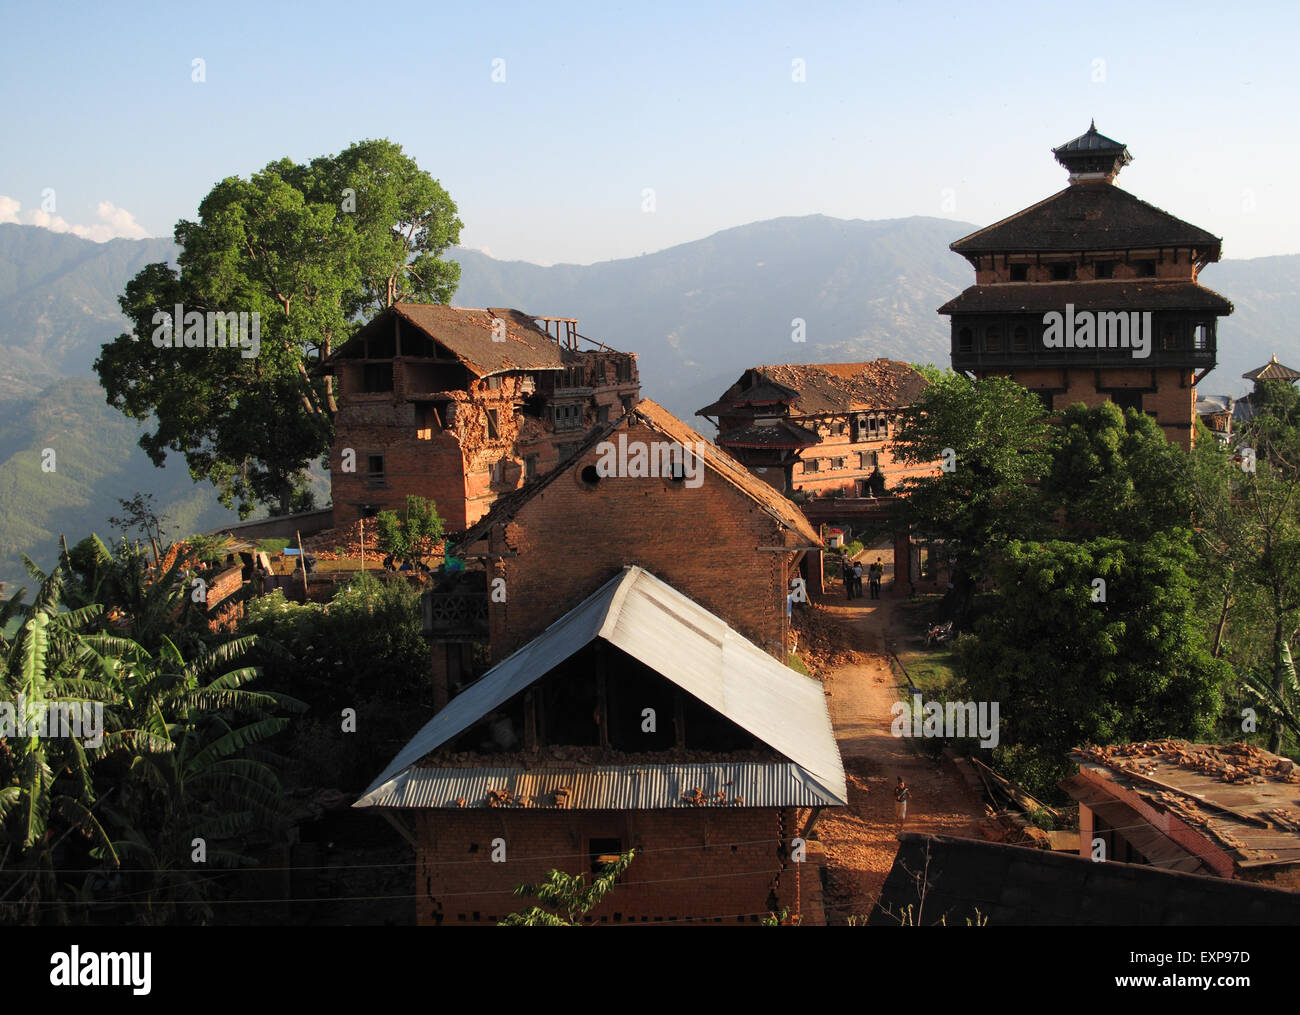 Dommages à l'palace, suite aux tremblements de terre de 2015, dans le district de Nuwakot Bagmati, Népal central (75 km de Katmandou) Banque D'Images